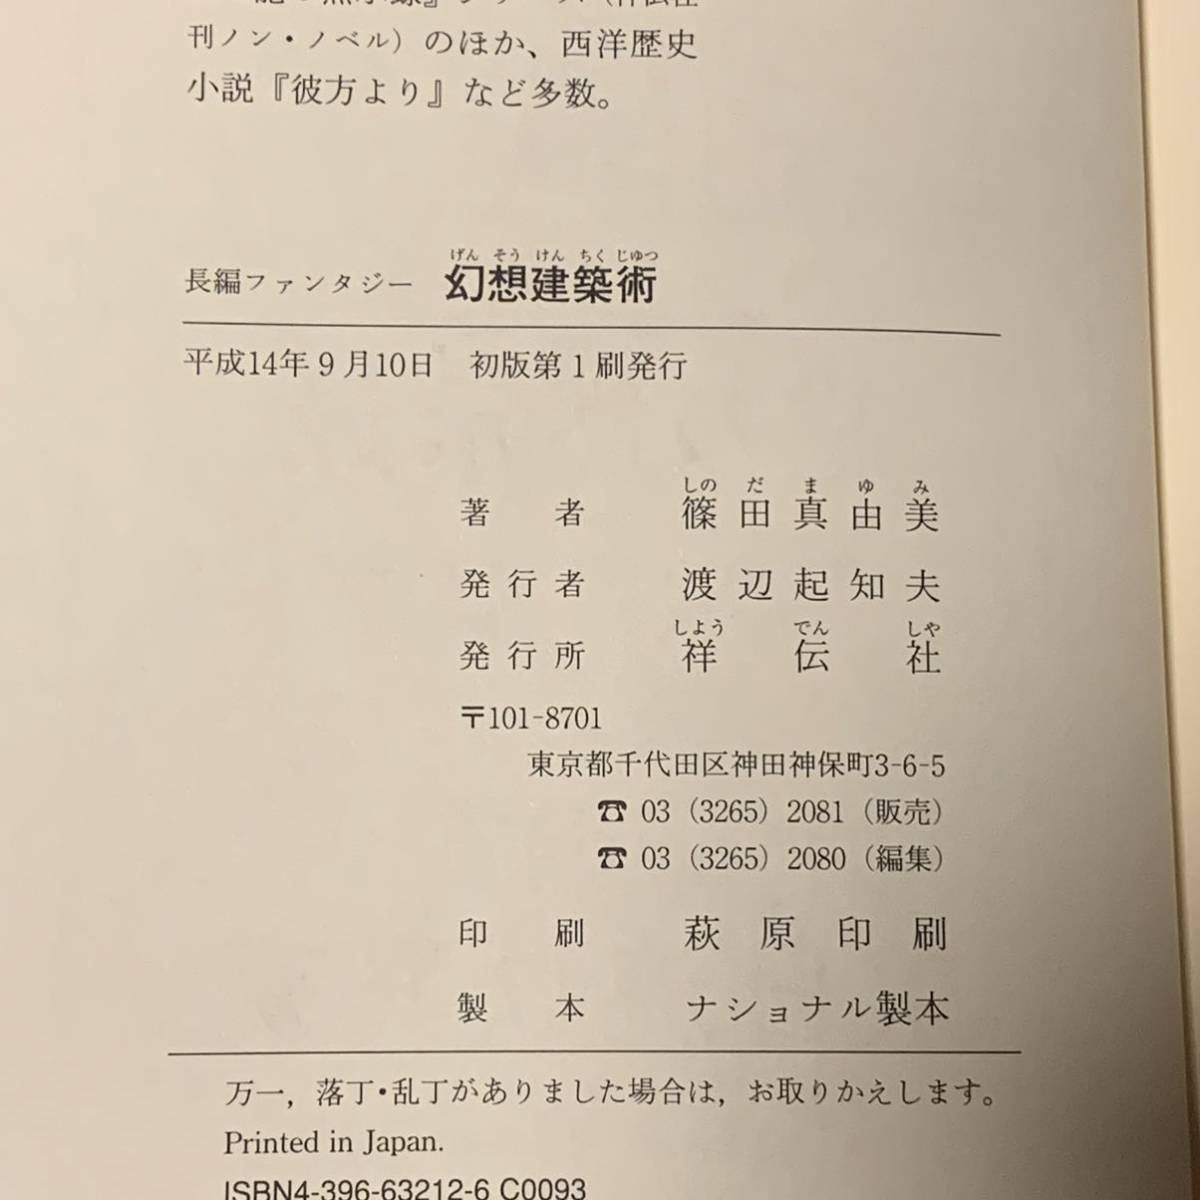  первая версия Shinoda Mayumi иллюзия . строительство ... фирма . длина сборник фэнтези 